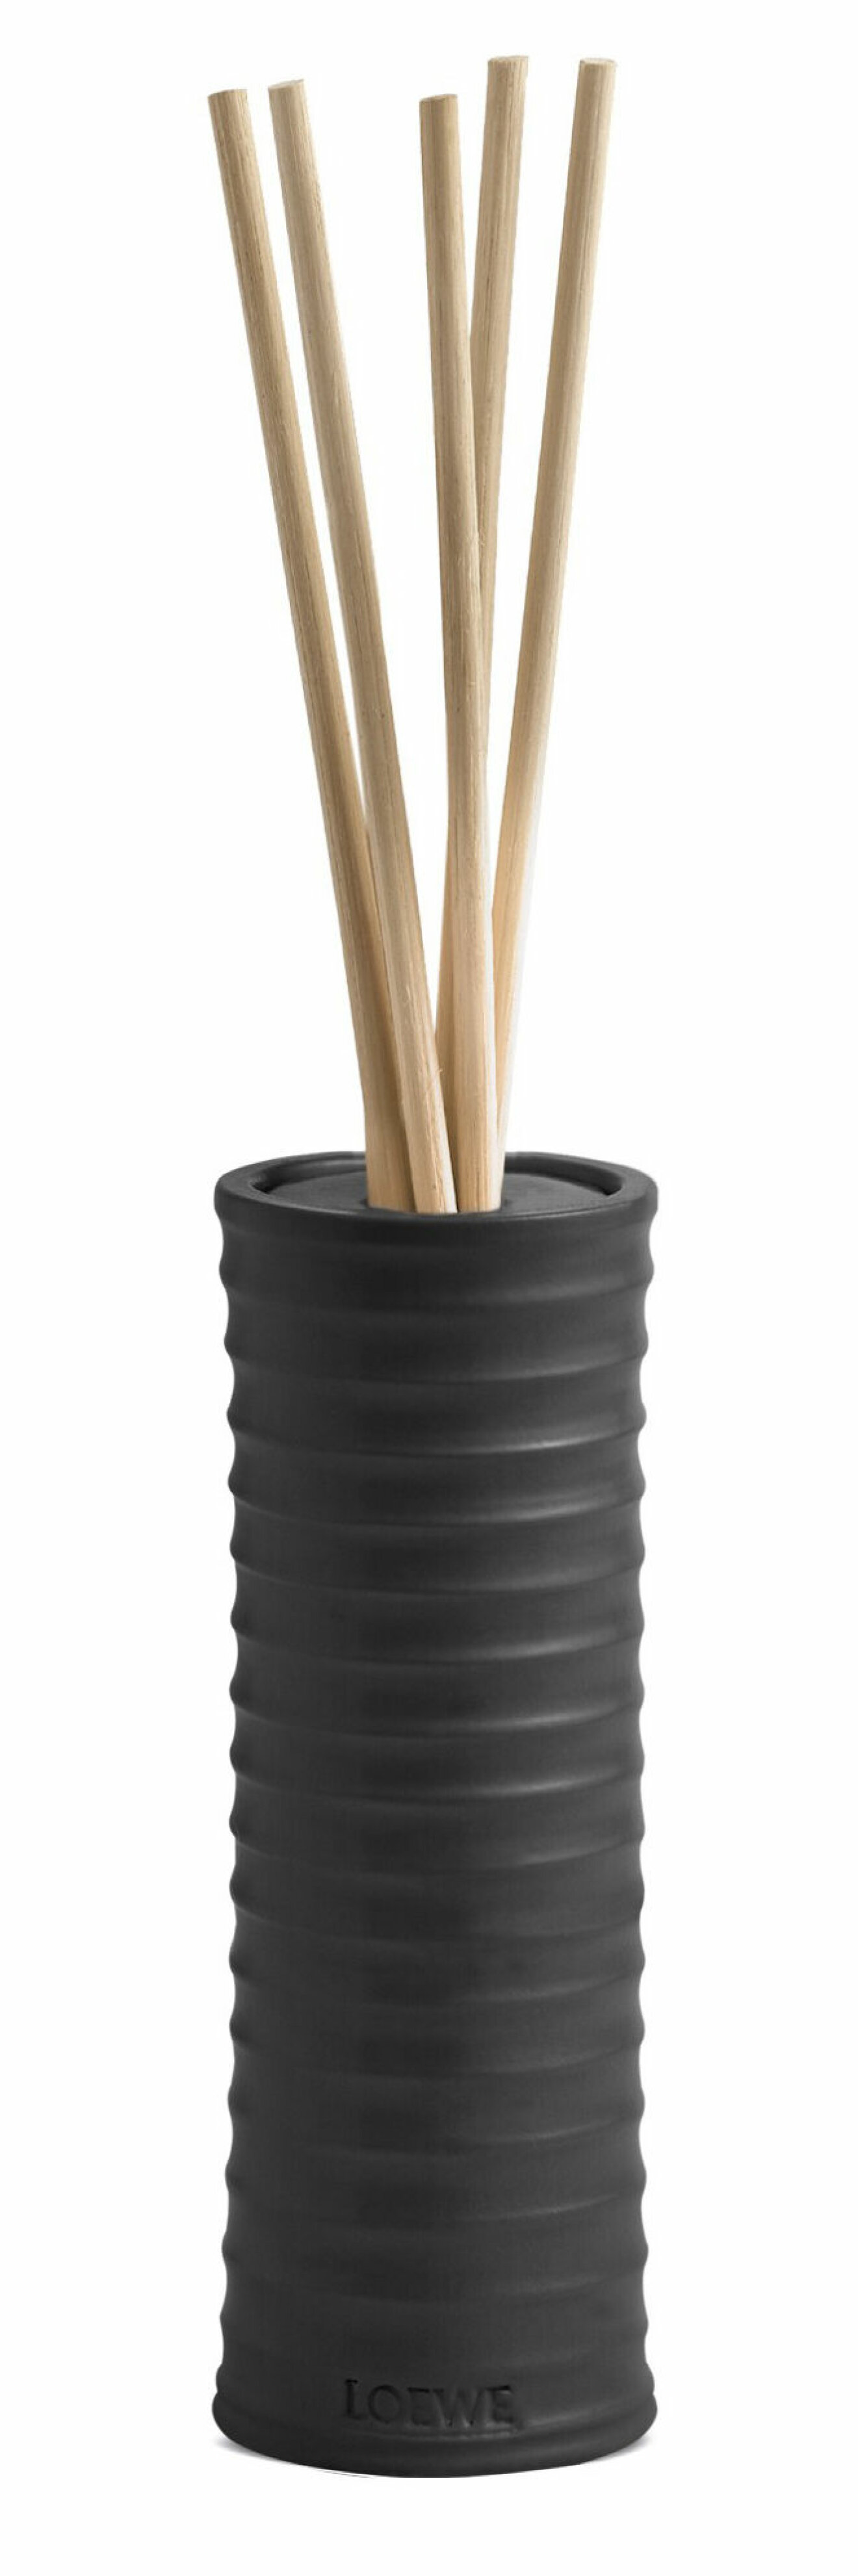 Doftpinnar i svart keramik från Loewe.